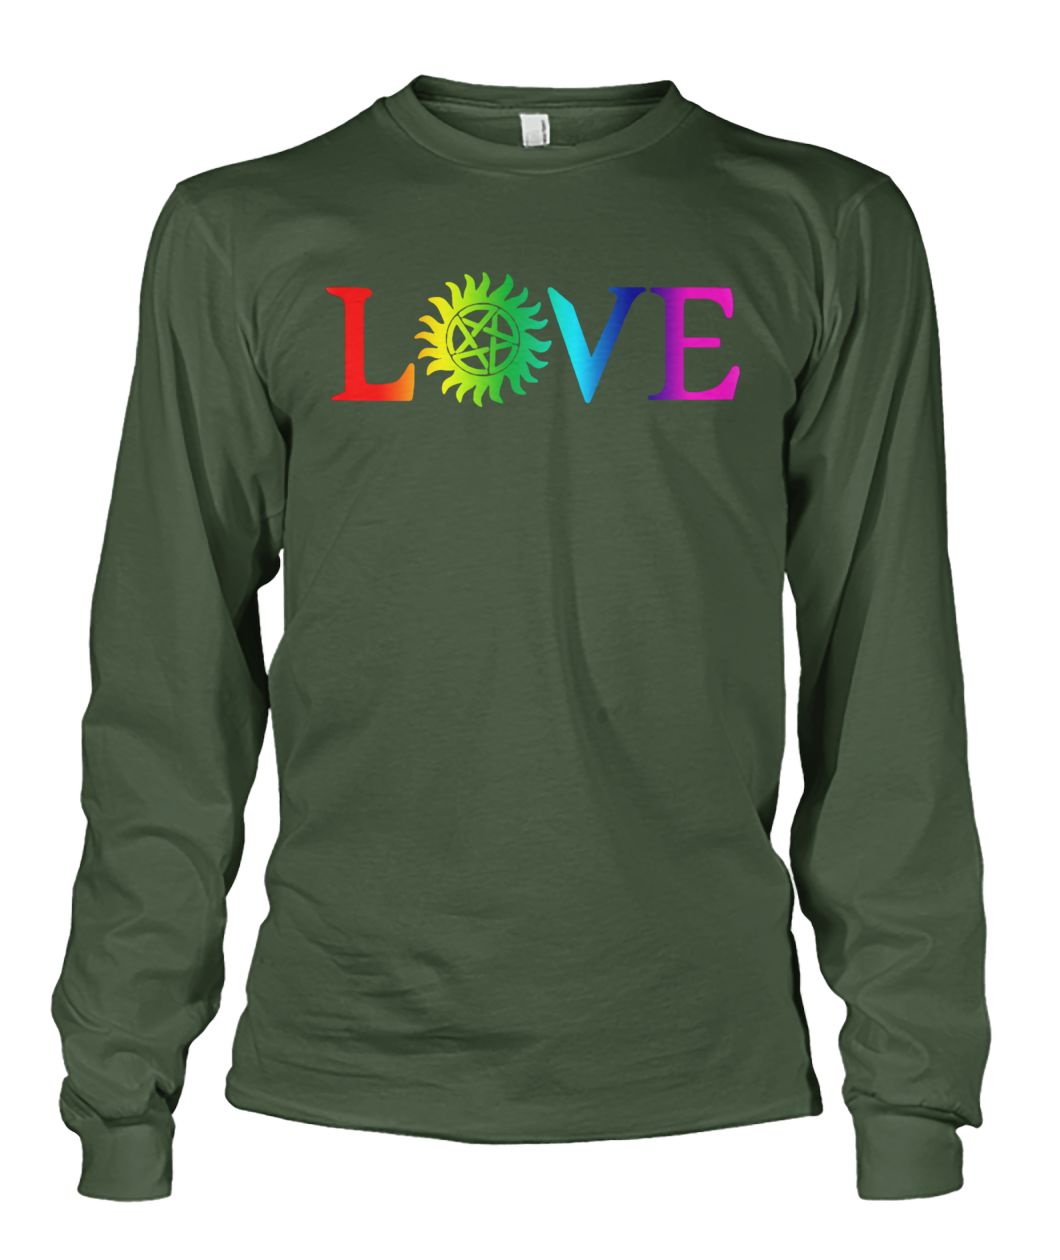 Love pride gay LGBT unisex long sleeve